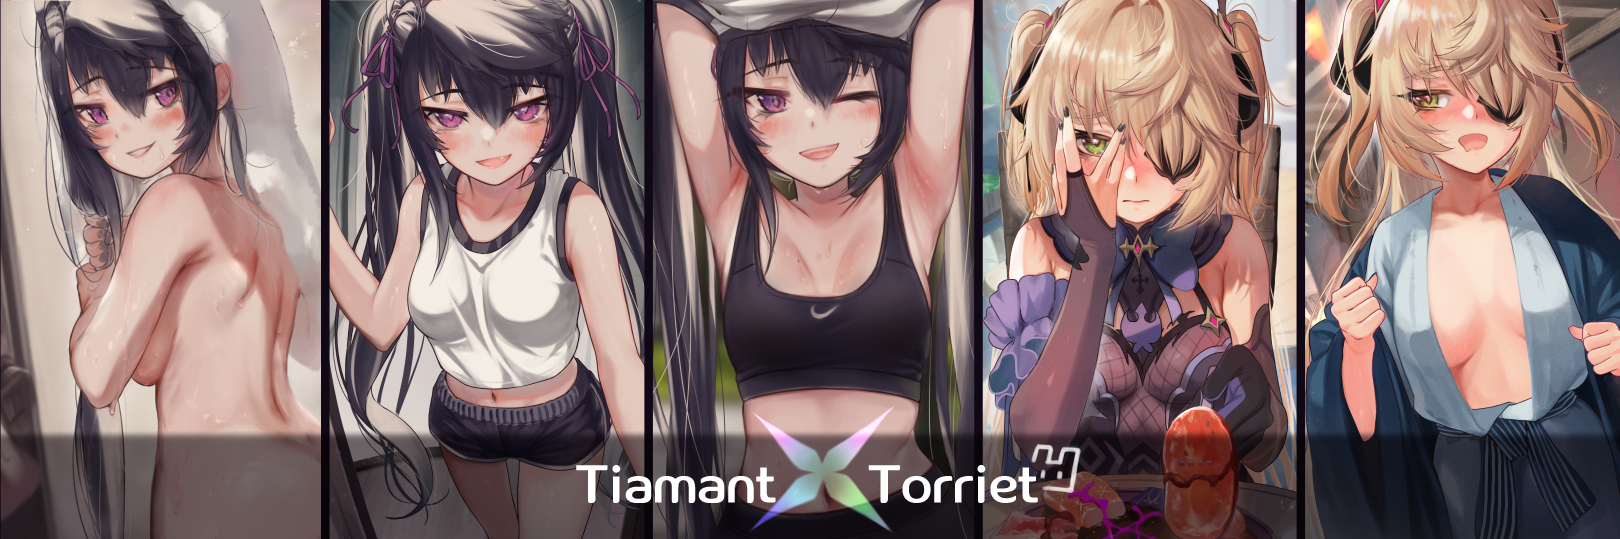 Tiamant-Torriet